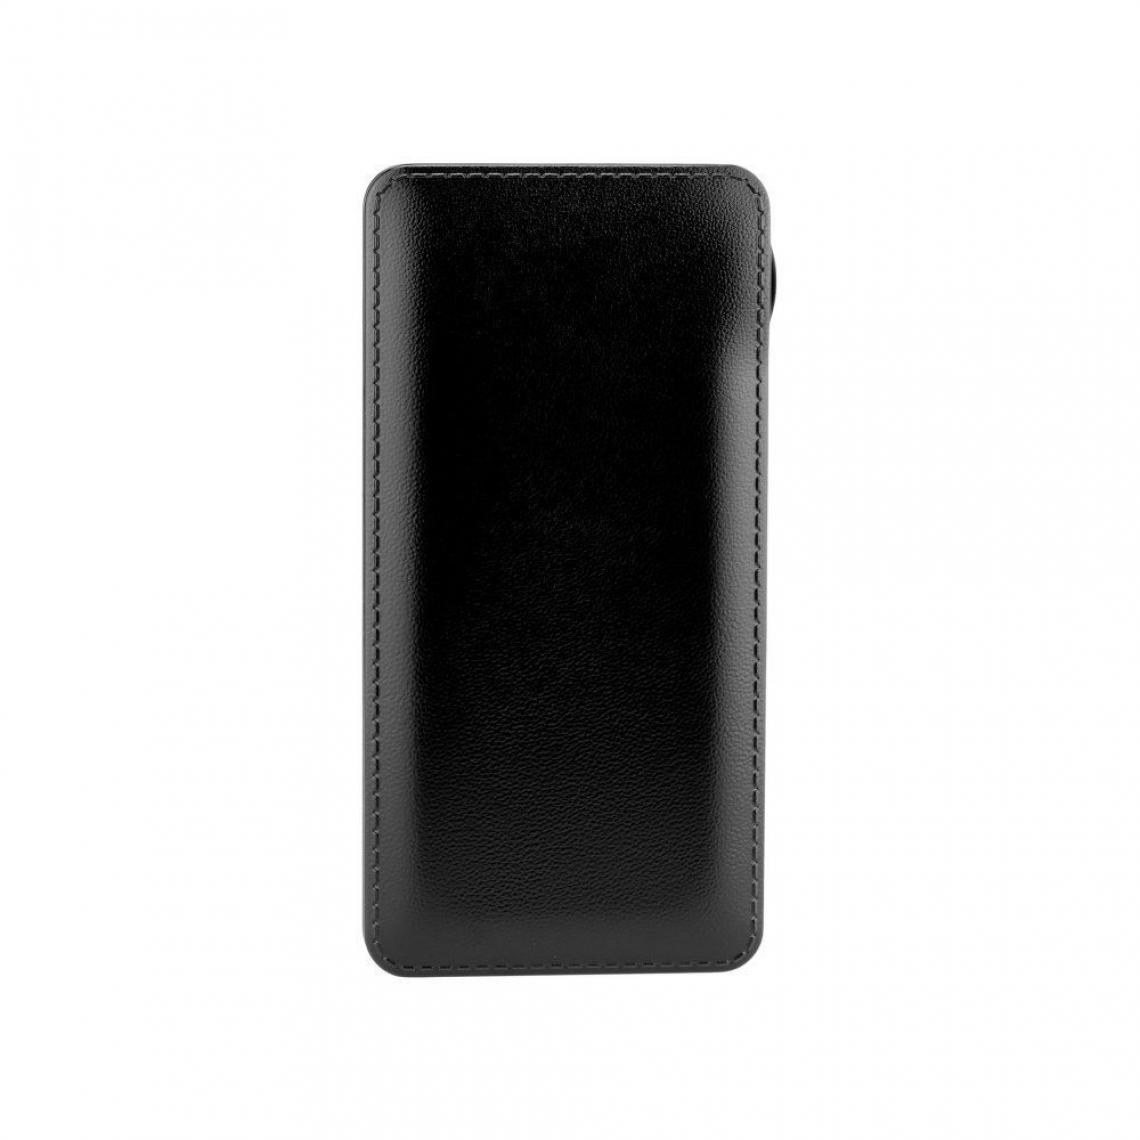 Ozzzo - Chargeur batterie externe 10000mAh powerbank ozzzo noir pour Sony Xperia 5 II 2020 - Autres accessoires smartphone